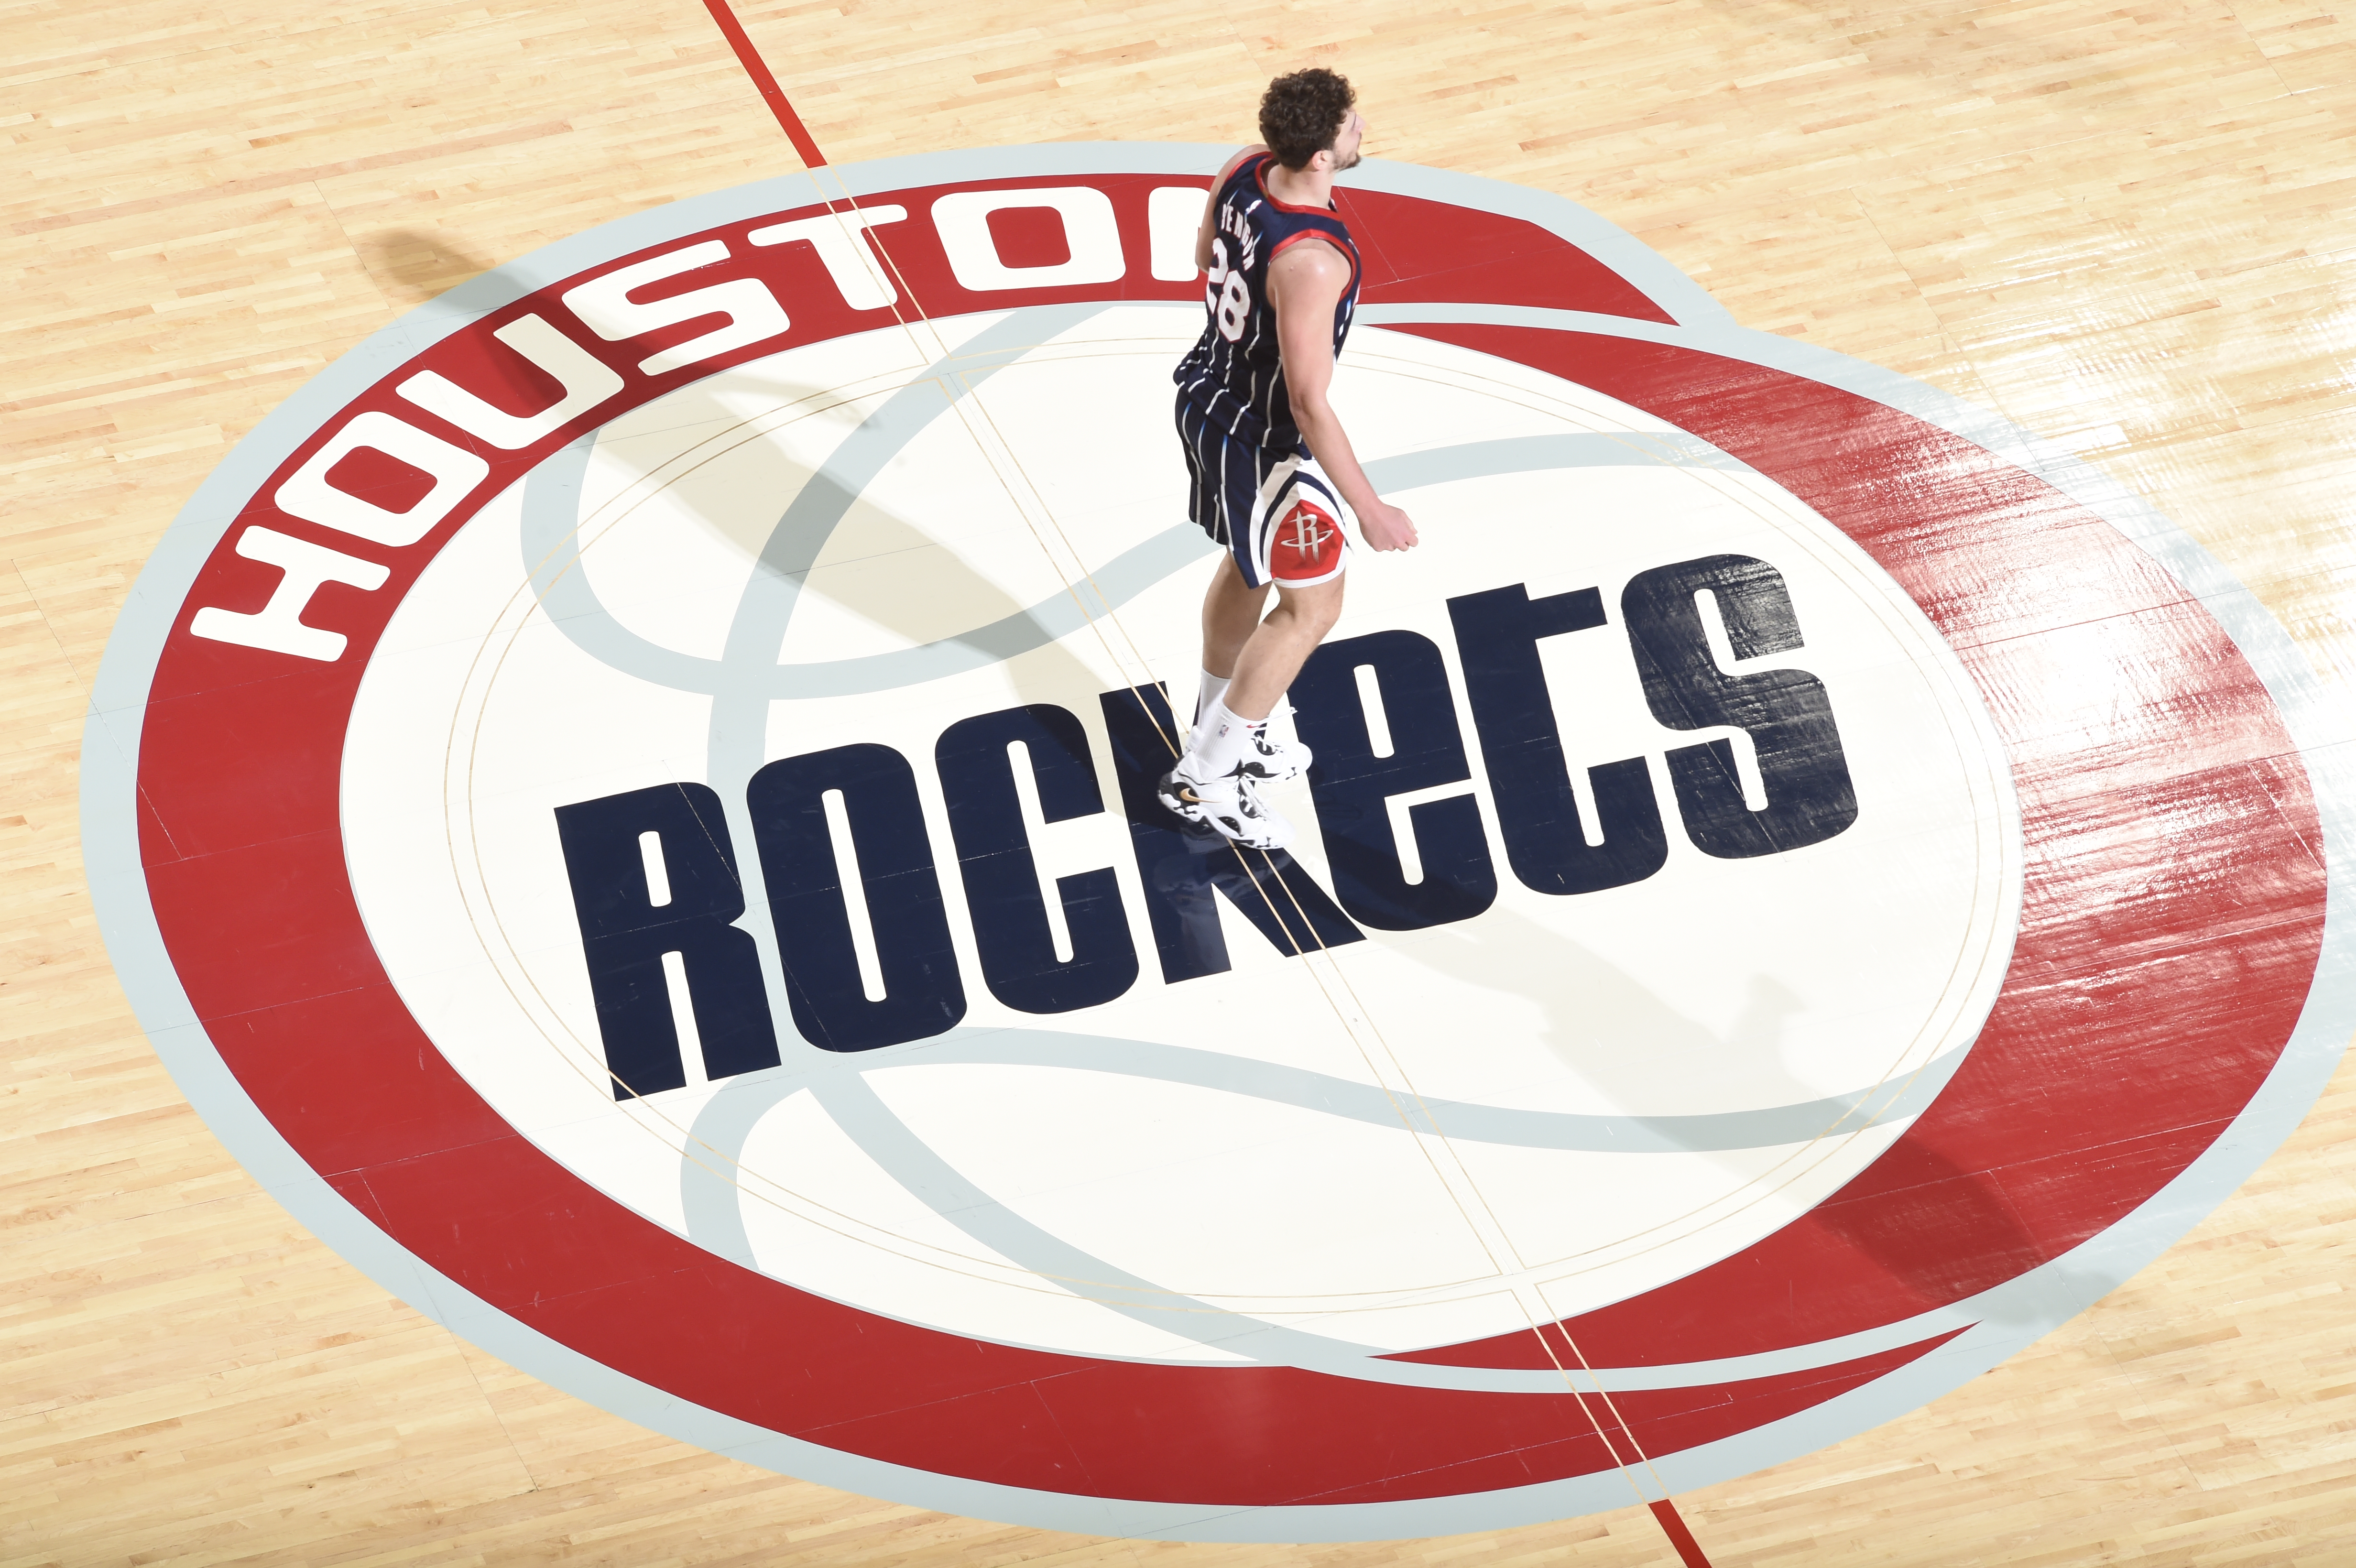 Toronto Raptors v Houston Rockets